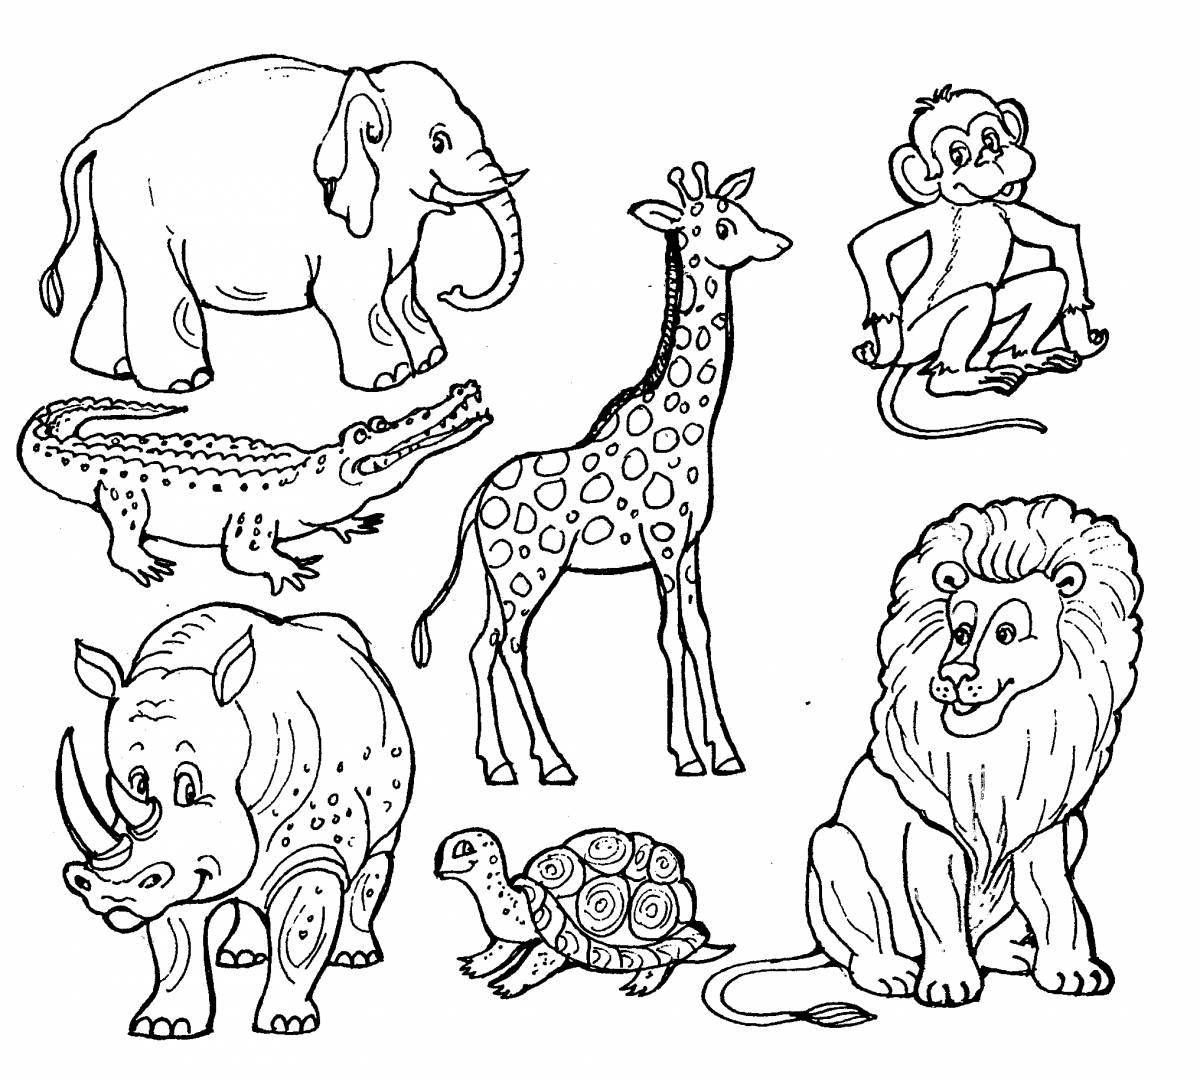 Креативная раскраска африканских животных для детей 3-4 лет